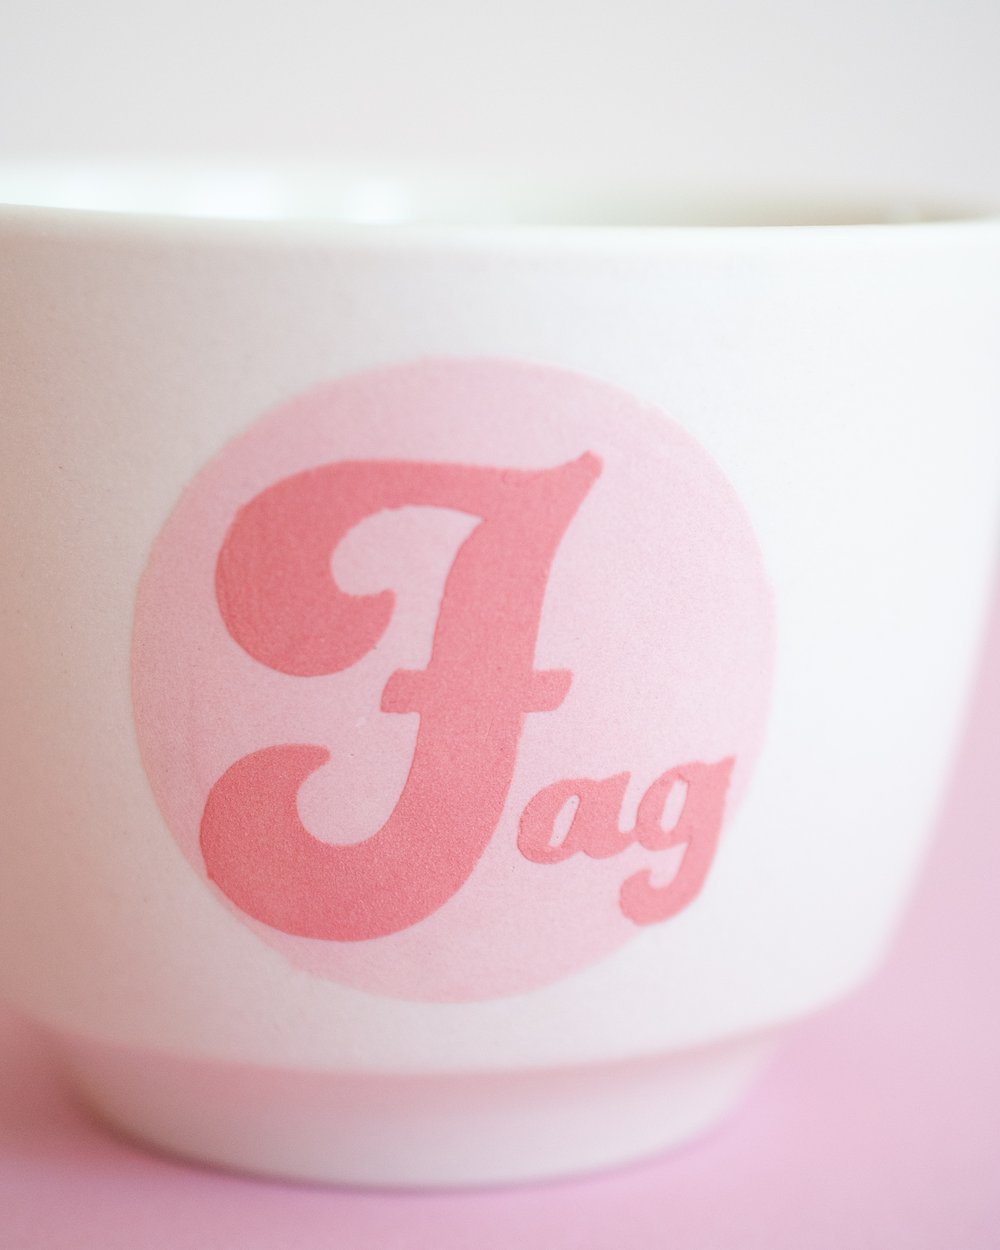 Image of The Fag mug